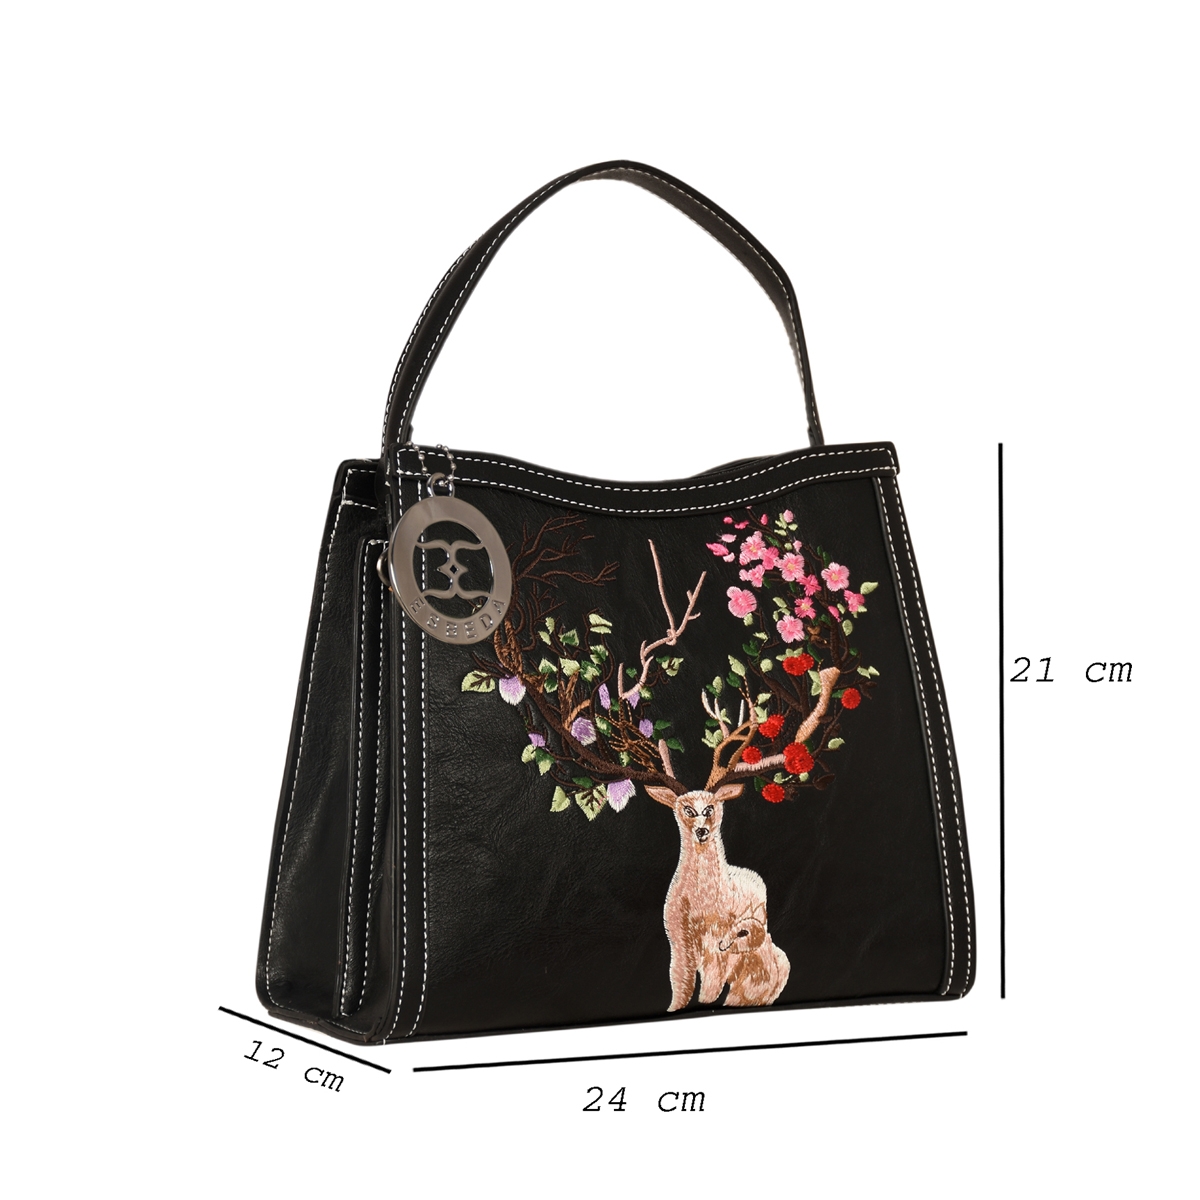 ESBEDA | ESBEDA Black Color Embroidery Dear Handbag For Womens 1